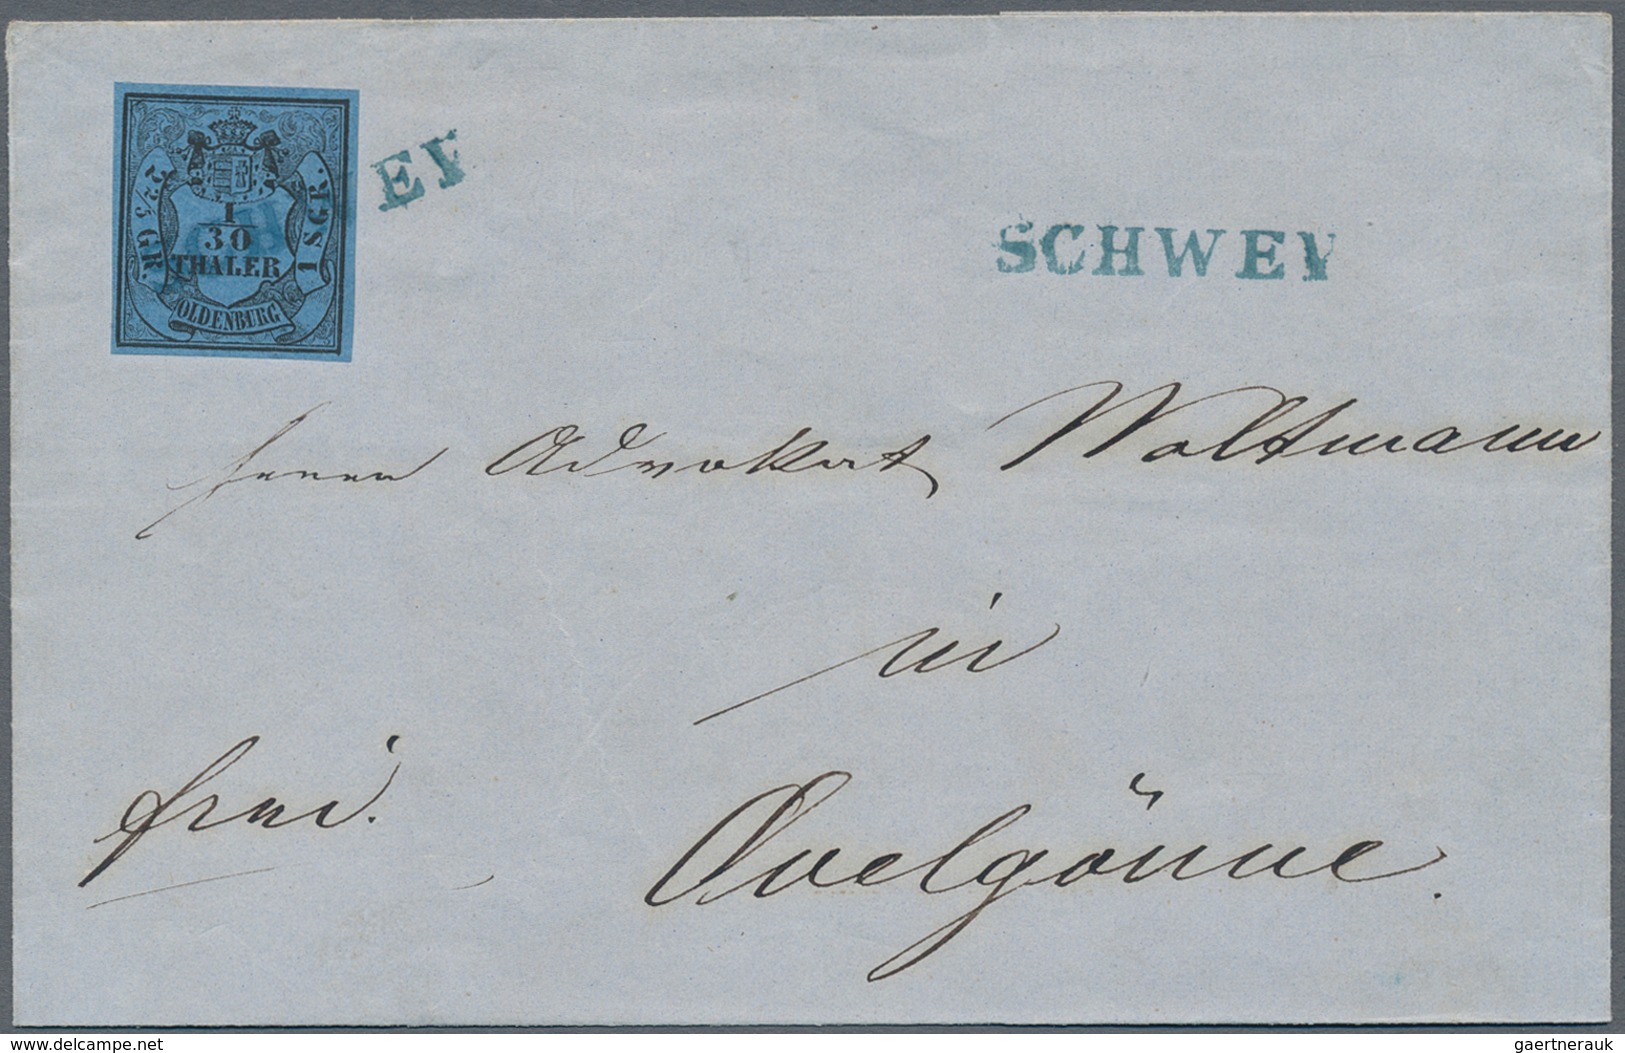 Oldenburg - Marken und Briefe: 1852, 1/30 Th. schwarz auf blau, vier Briefhüllen mit Einzelfrankatur